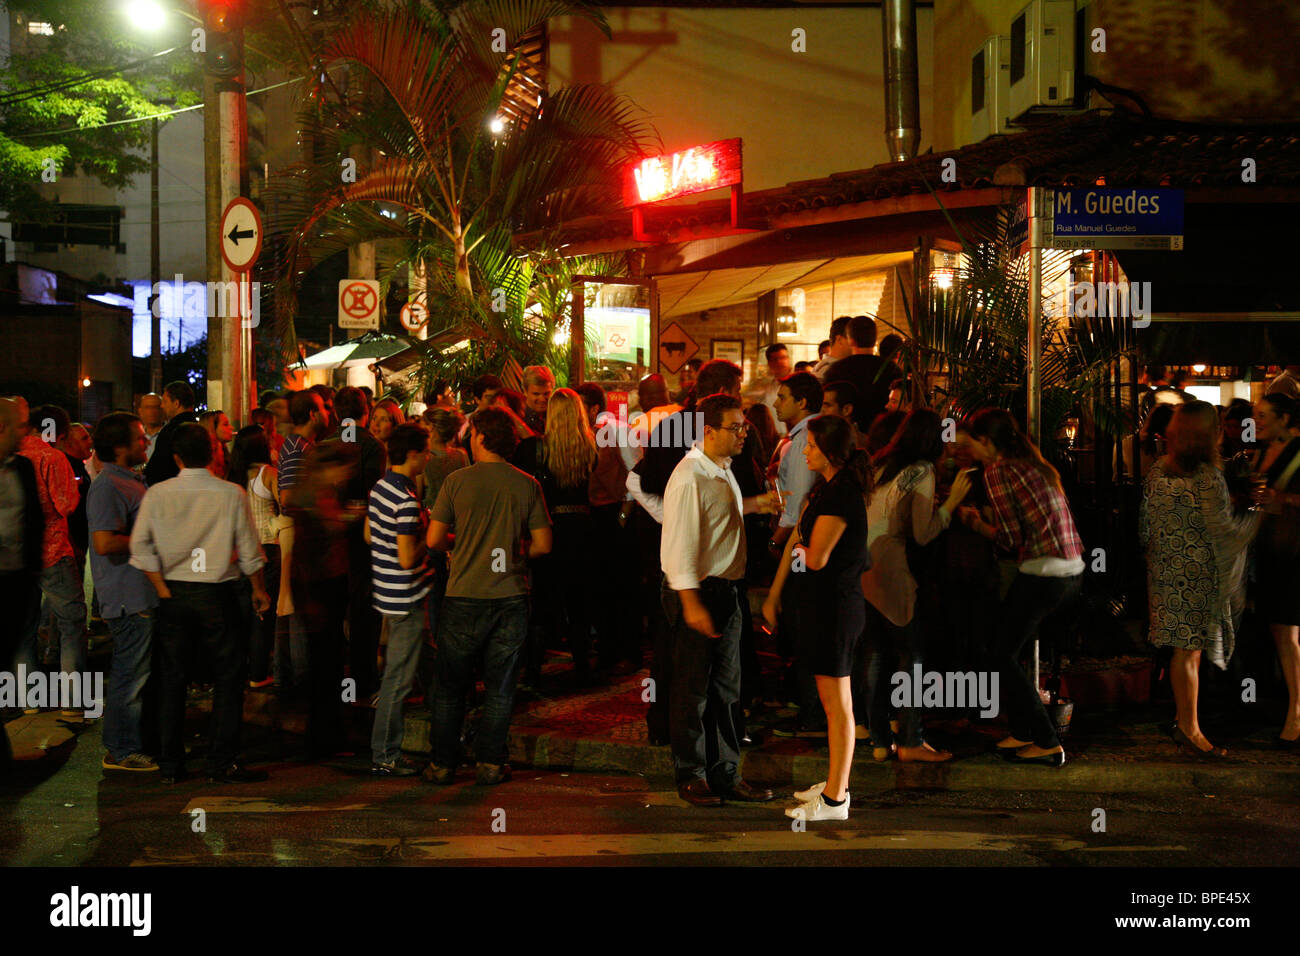 La gente en la Vaca Veja bar y restaurante en Itaim Bibi, Sao Paulo, Brasil  Fotografía de stock - Alamy